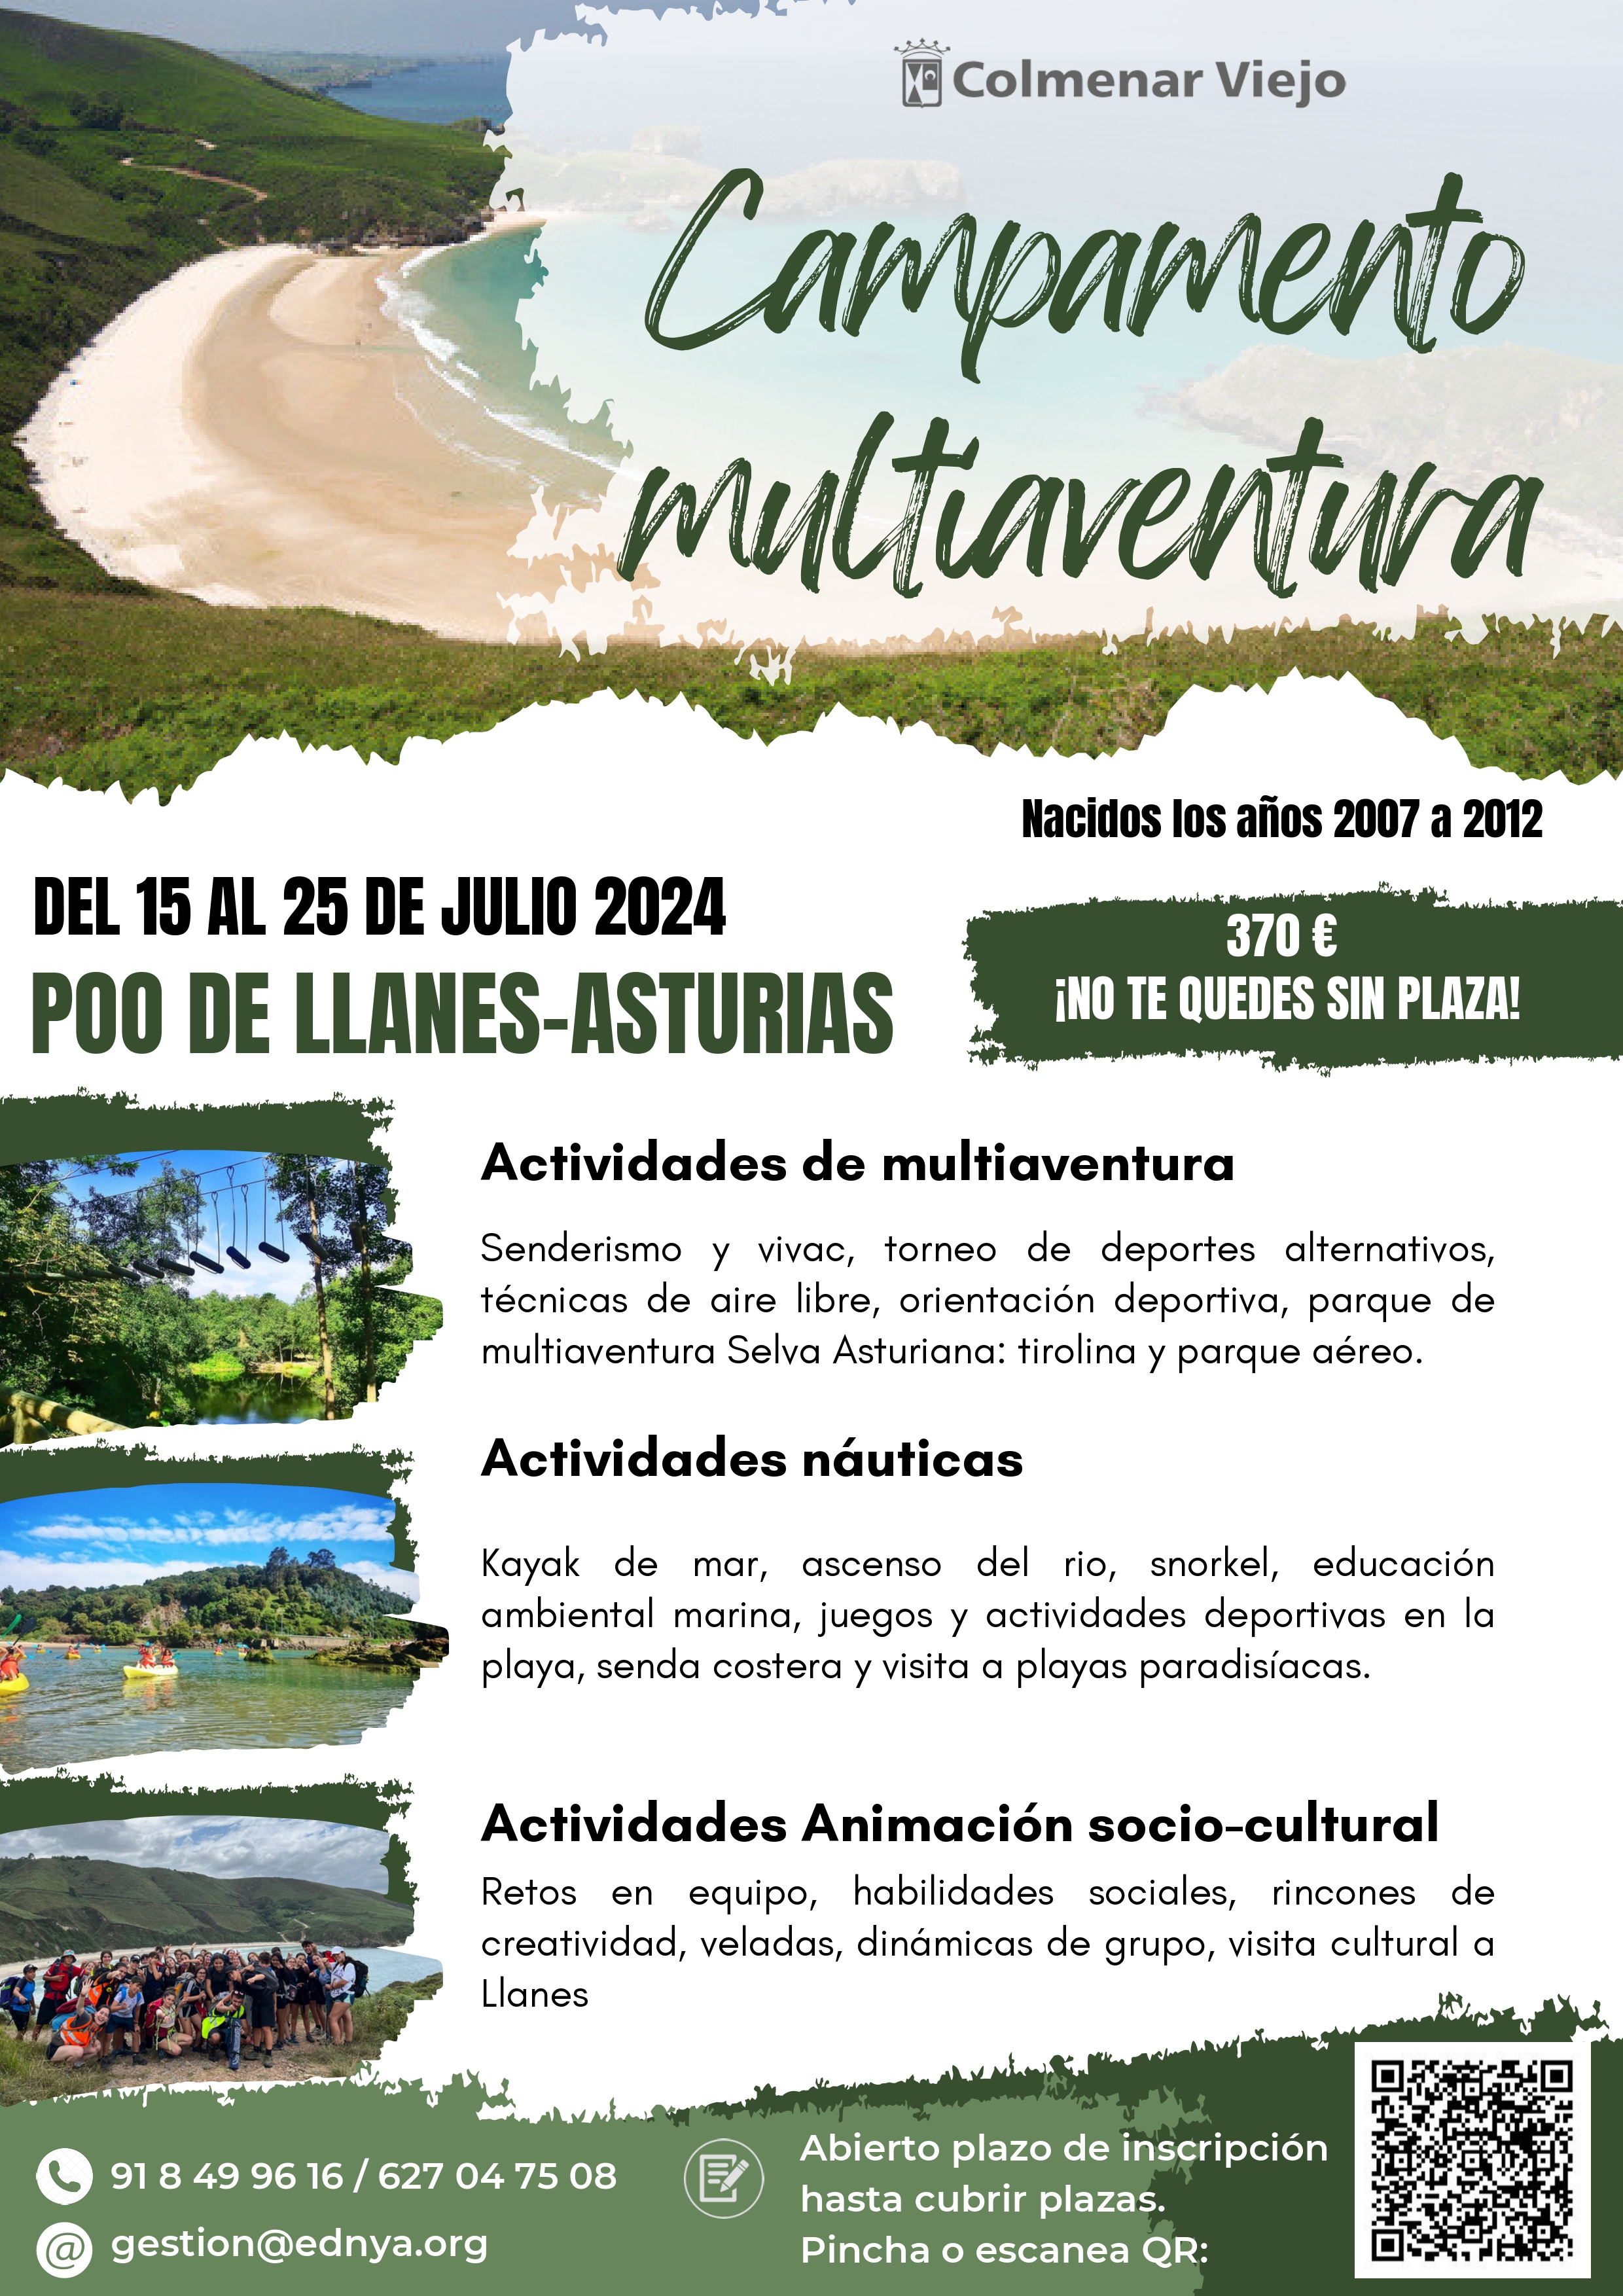 Campamento multiaventura LLANES Asturias 2024 Colmenar Viejo page 0001